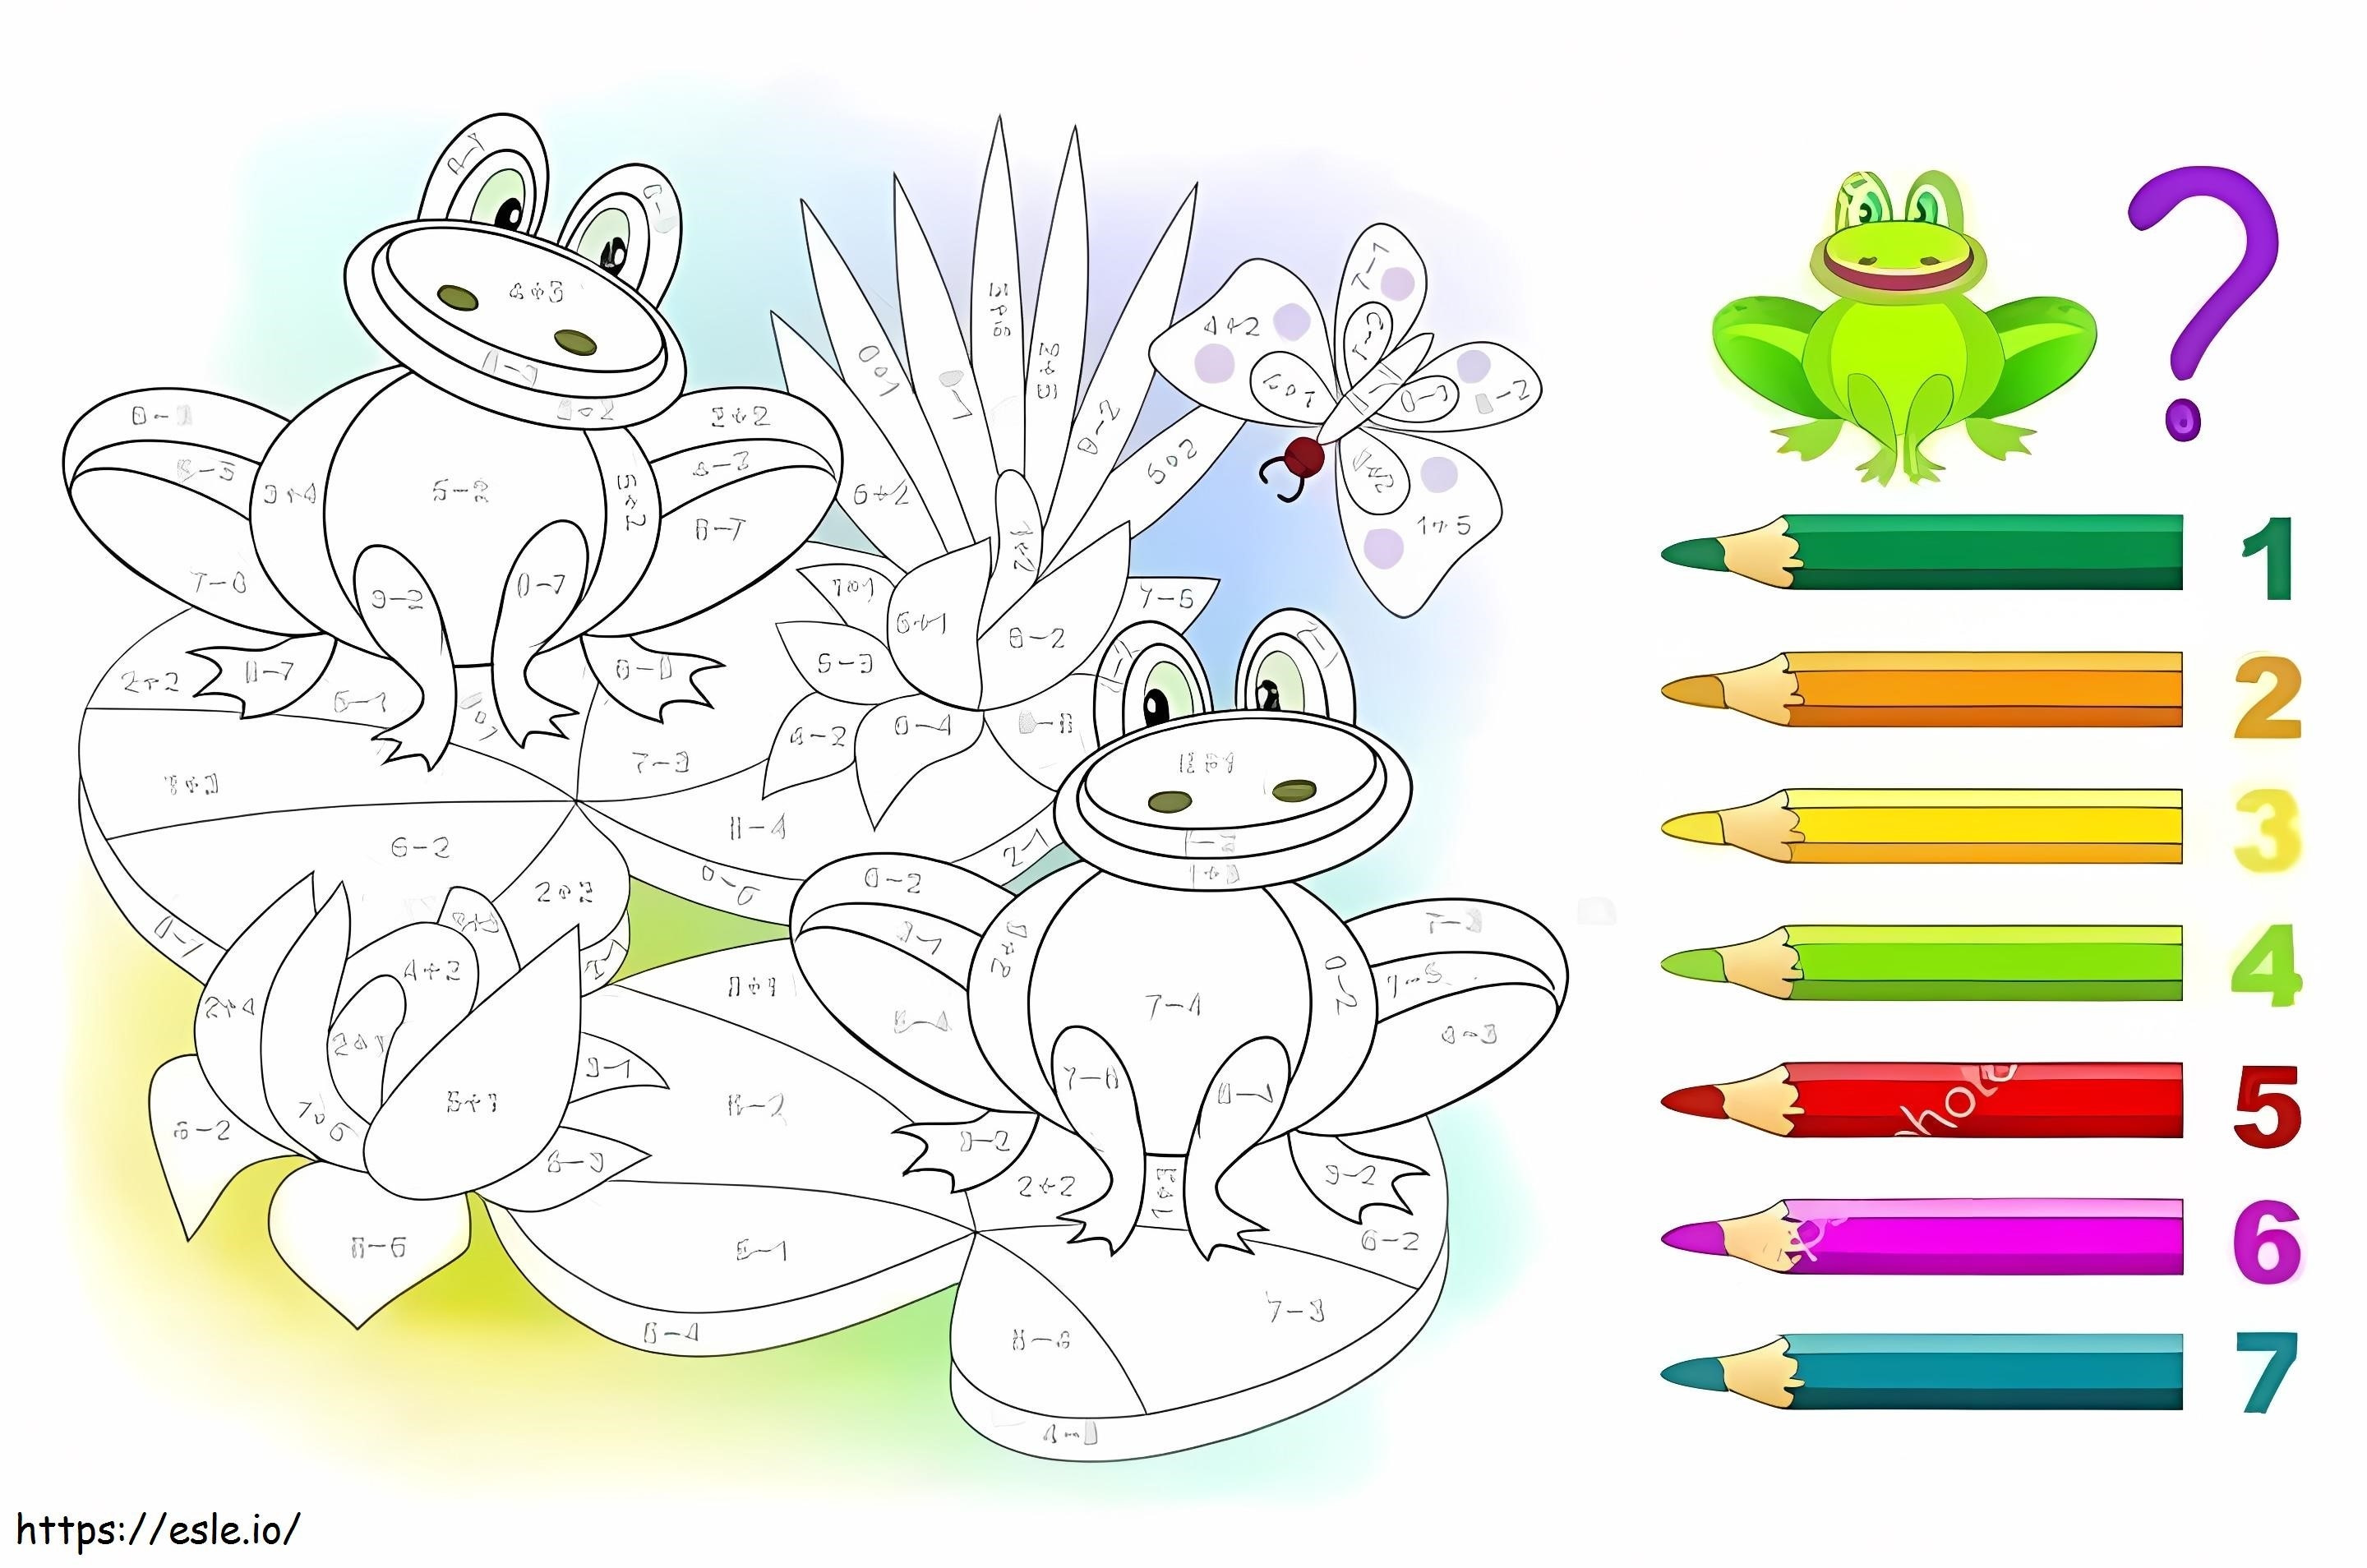 Matematyka żaby kolorowanka